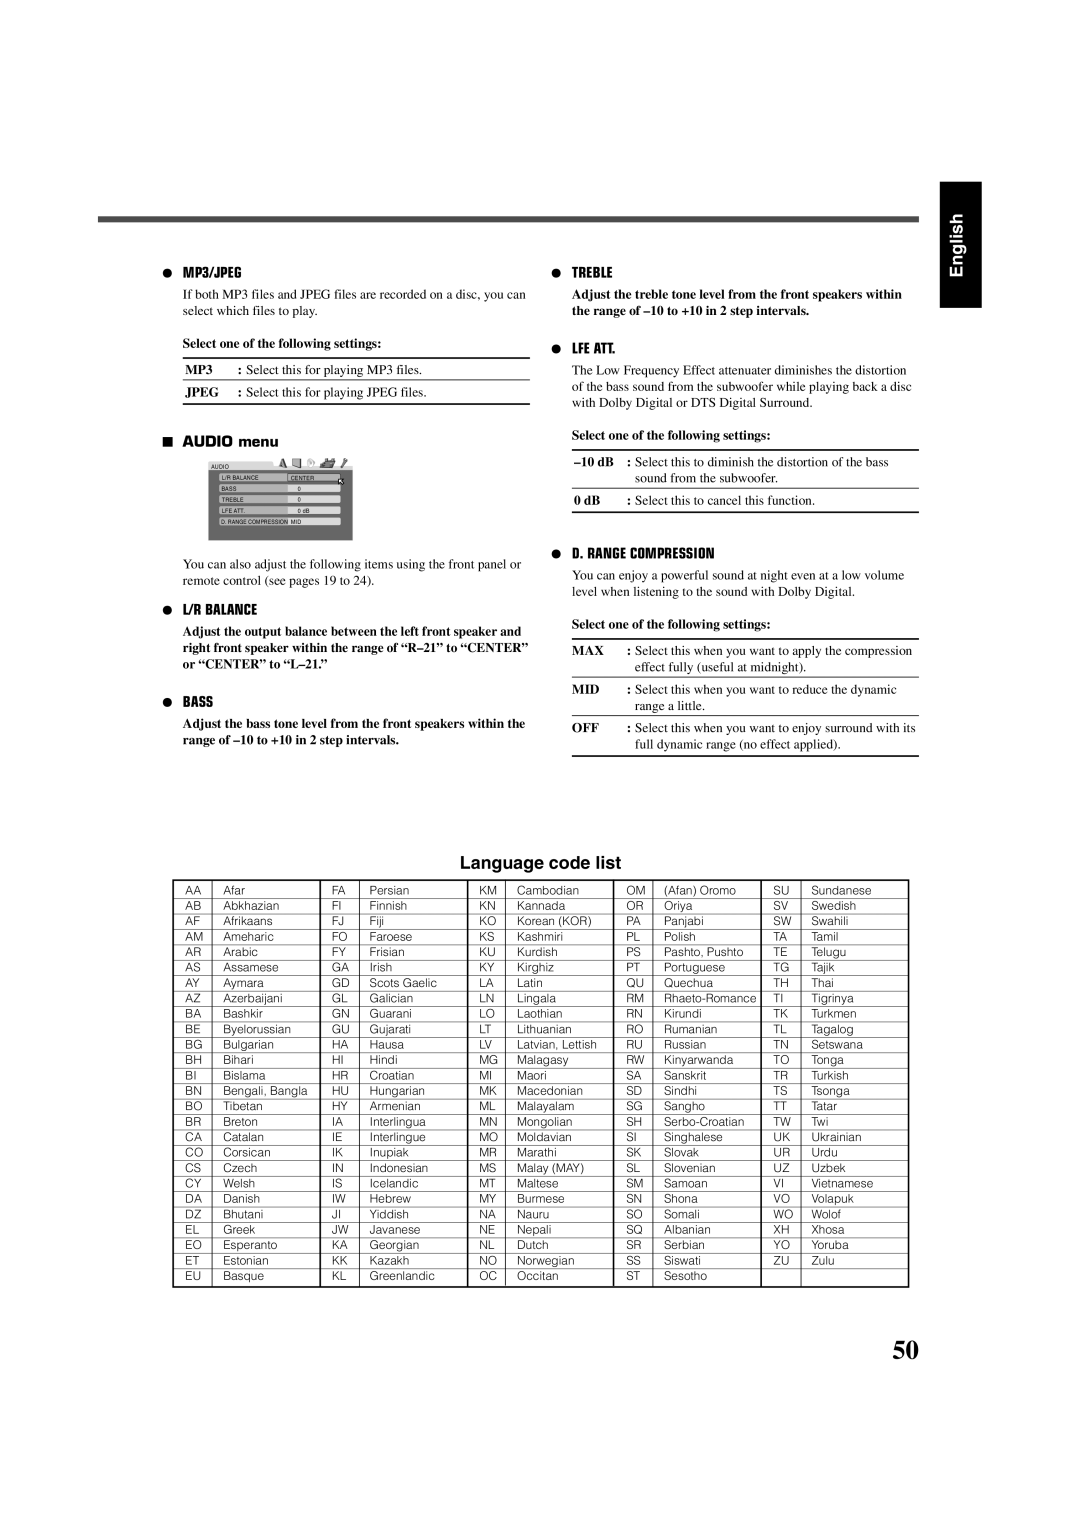 JVC RX-DV3SL manual Audio menu, MP3, Jpeg, Max, Mid 